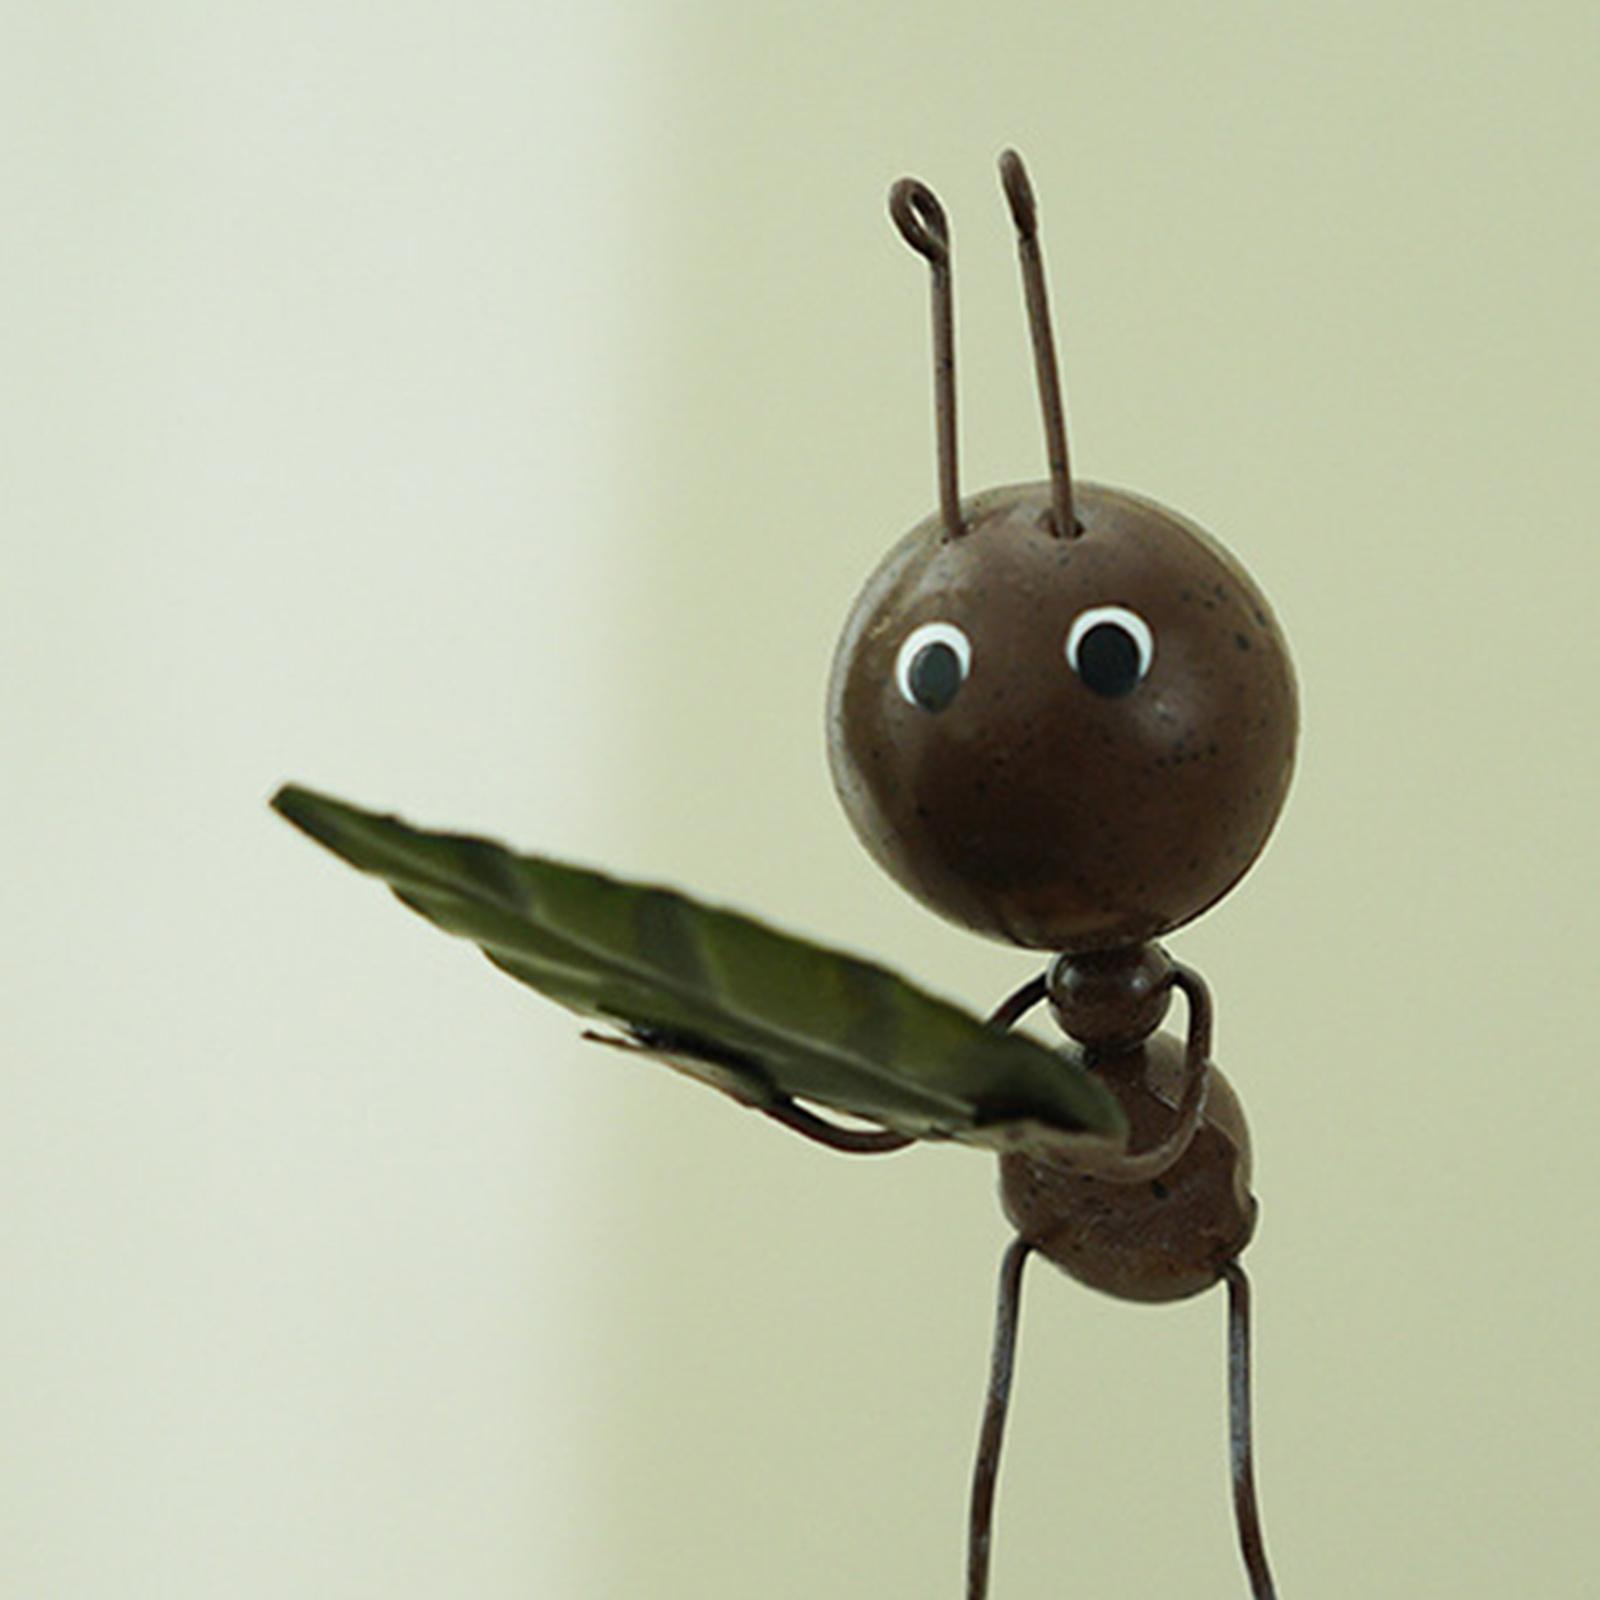 Hình ảnh 2pcs Ant Figurine Statue Ornament Sculpture Crafts Home Desktop Decoration